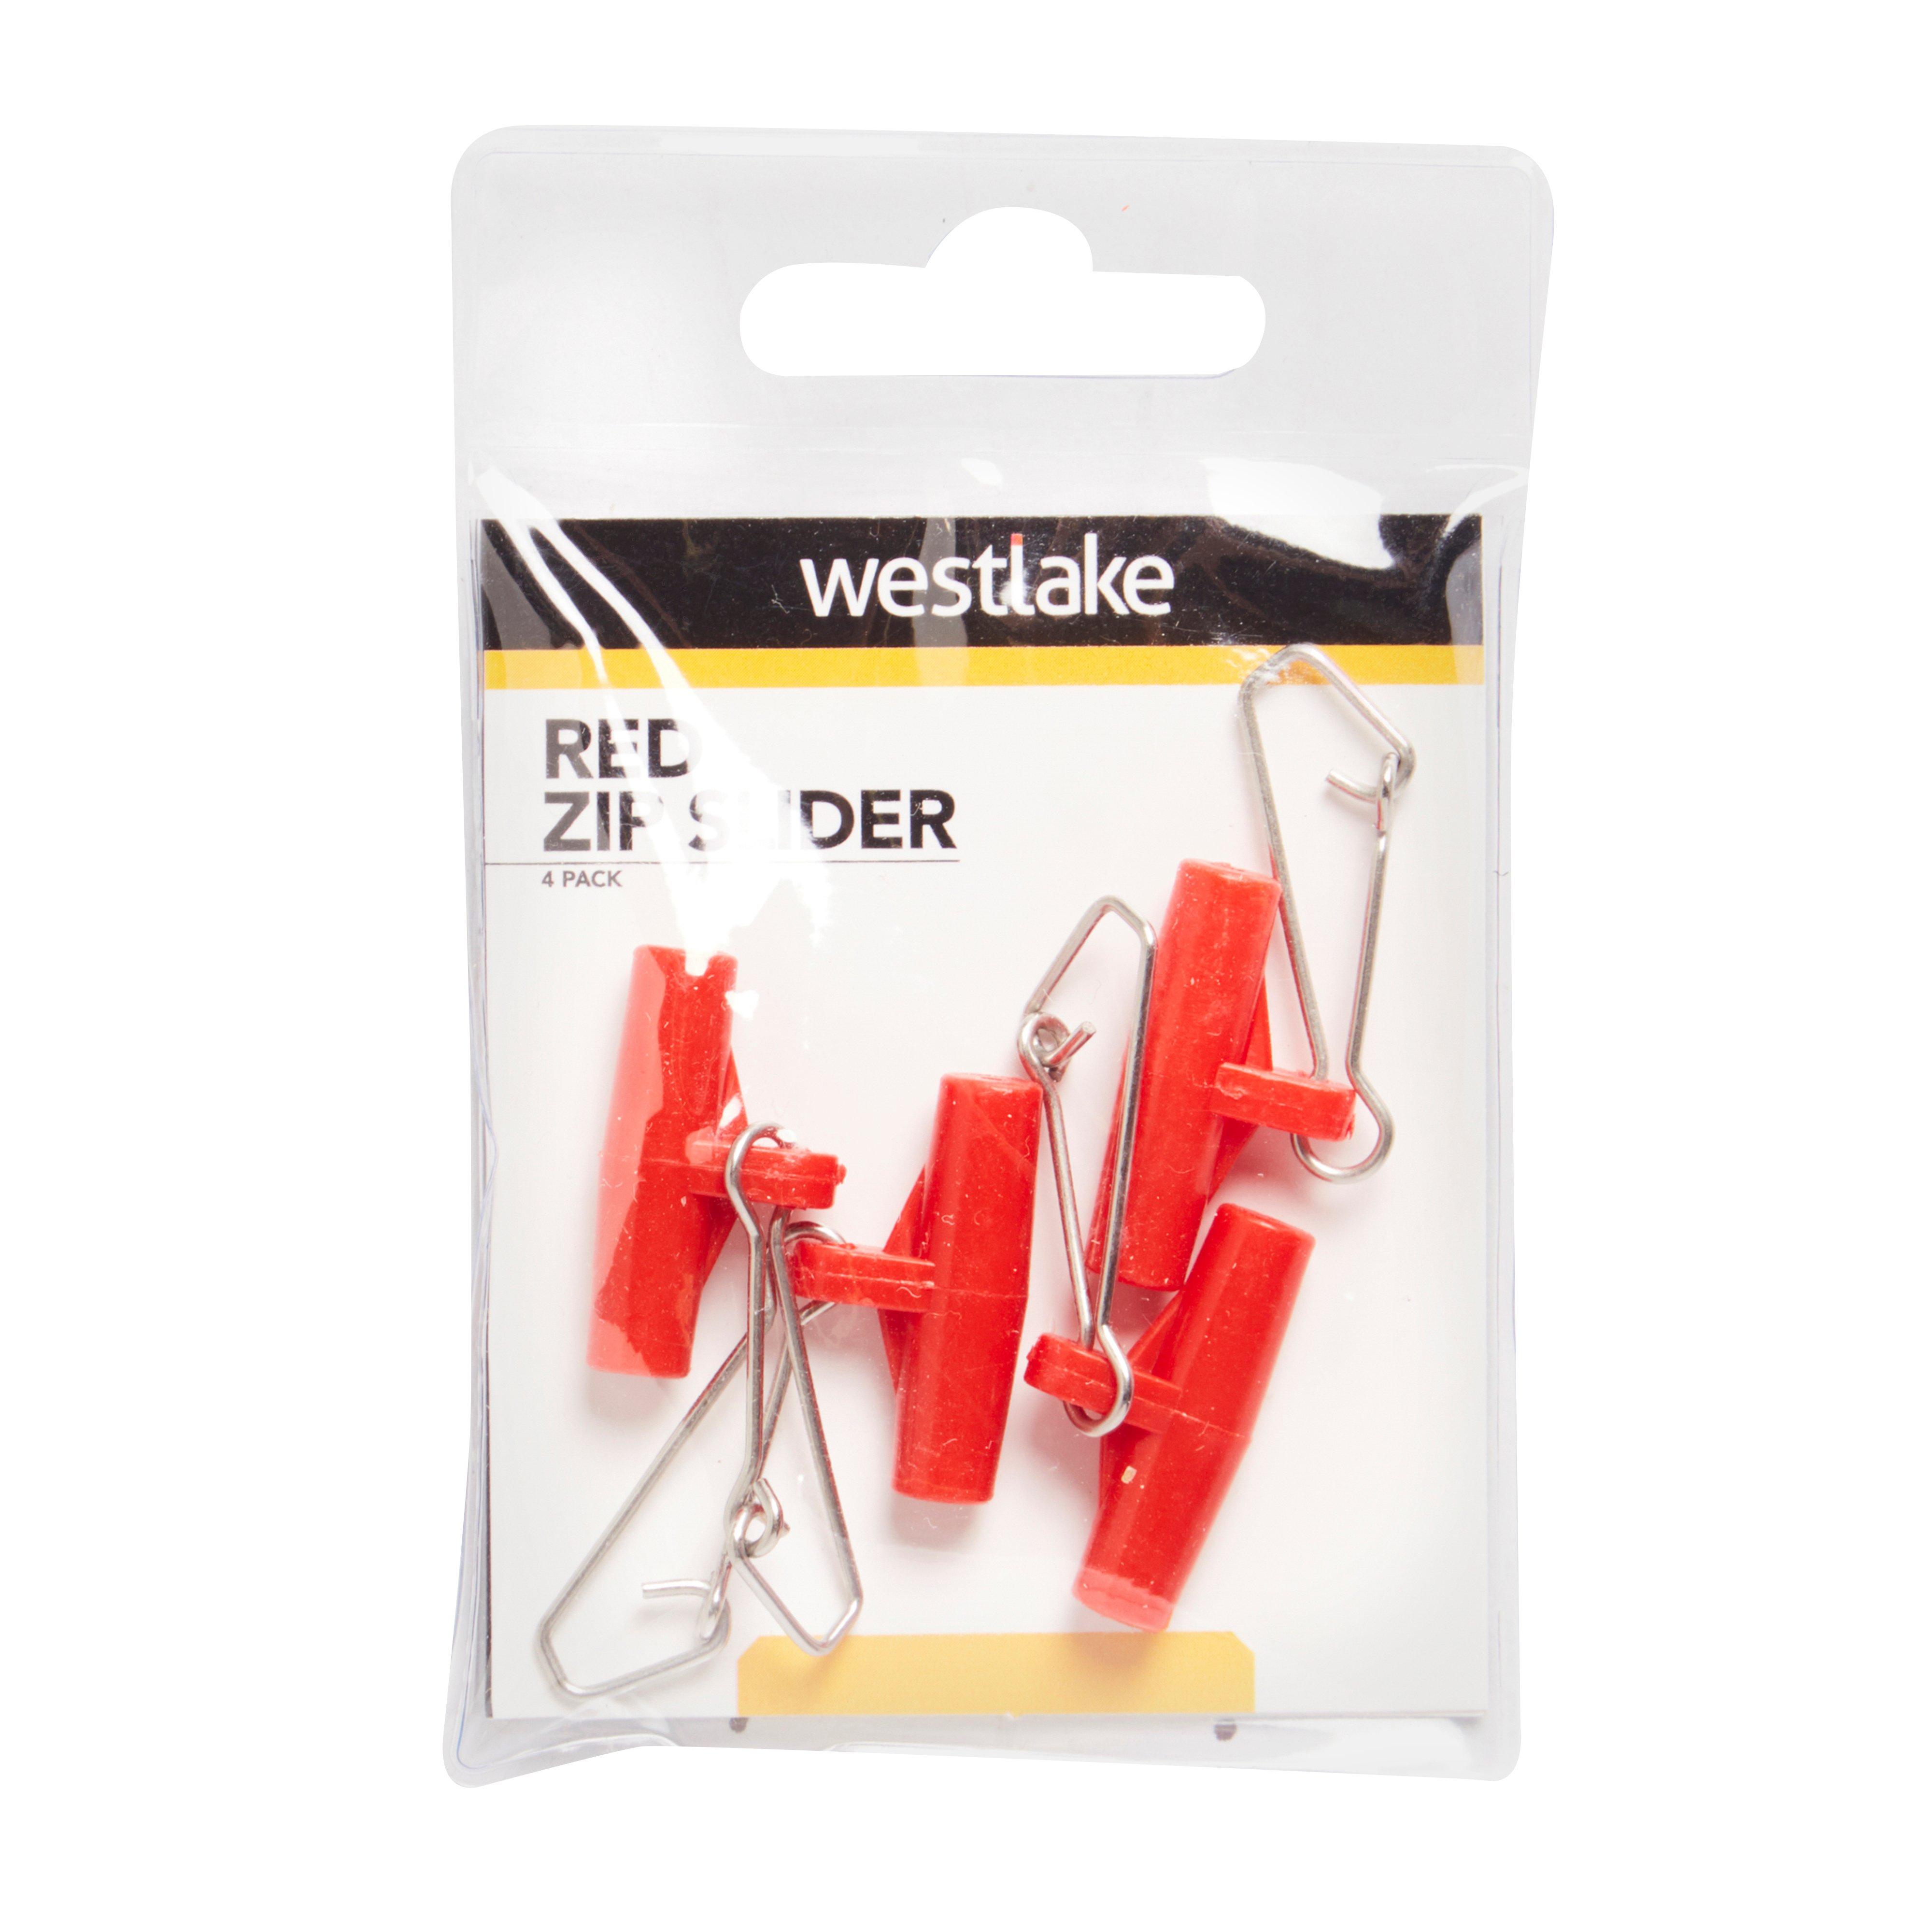 Westlake 2Pk Red Zip Slider Review